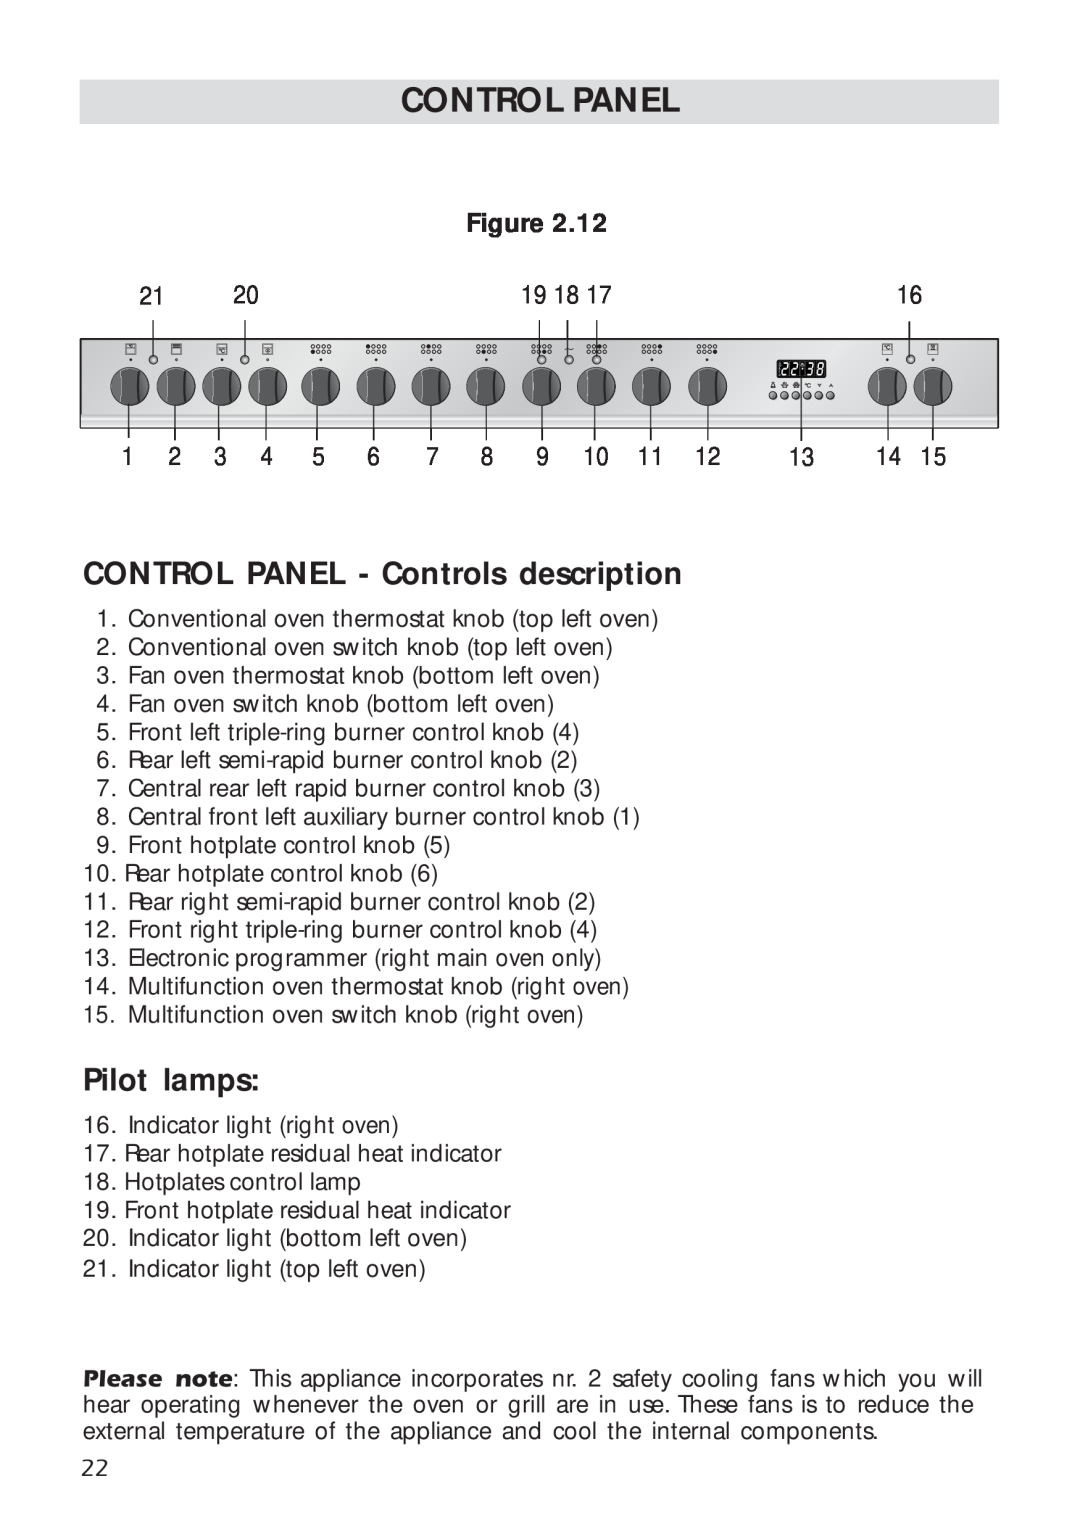 DeLonghi A 1346 G manual Control Panel, CONTROL PANEL - Controls description, Pilot lamps 